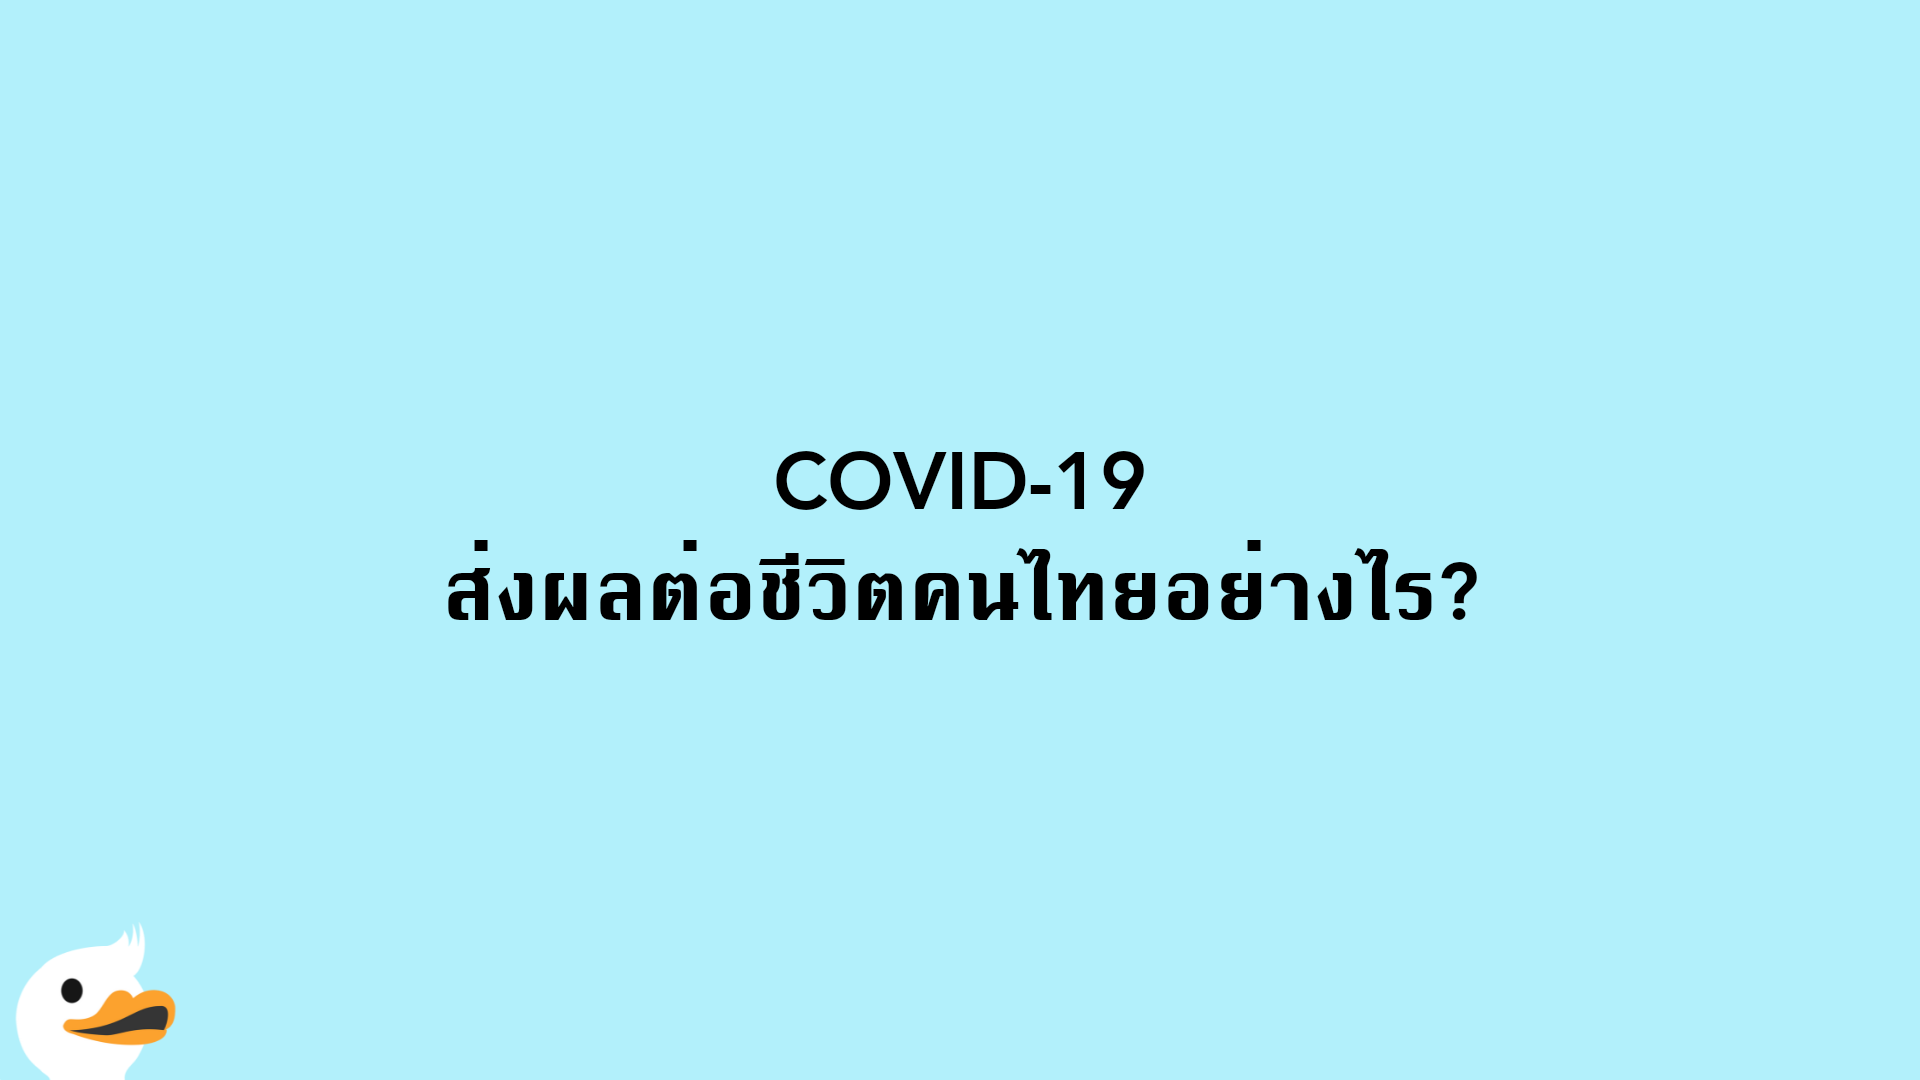 COVID-19 ส่งผลต่อชีวิตคนไทยอย่างไร?